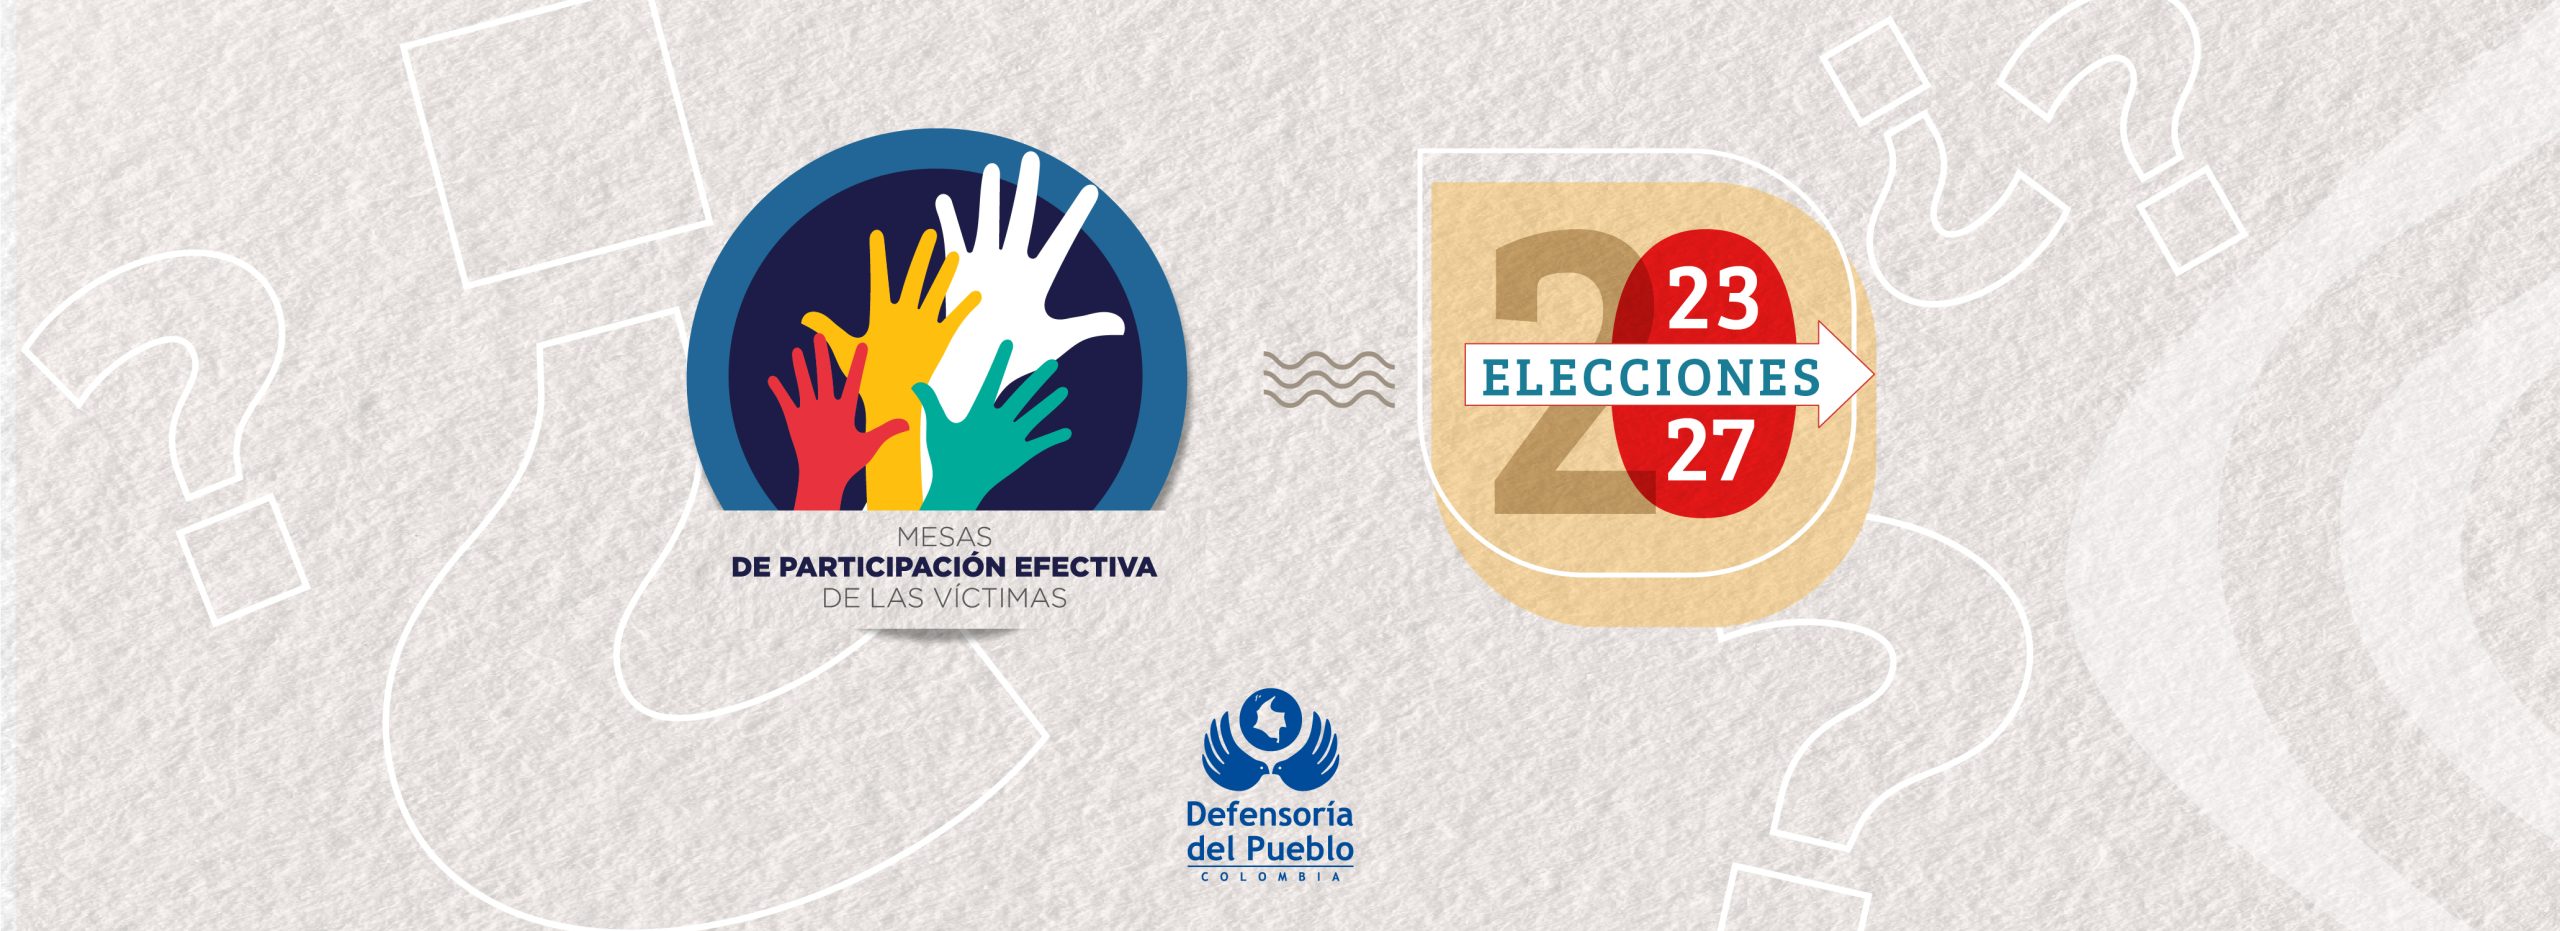 Banner elecciones 2023 con logo de mesas de participación efectiva de las víctimas